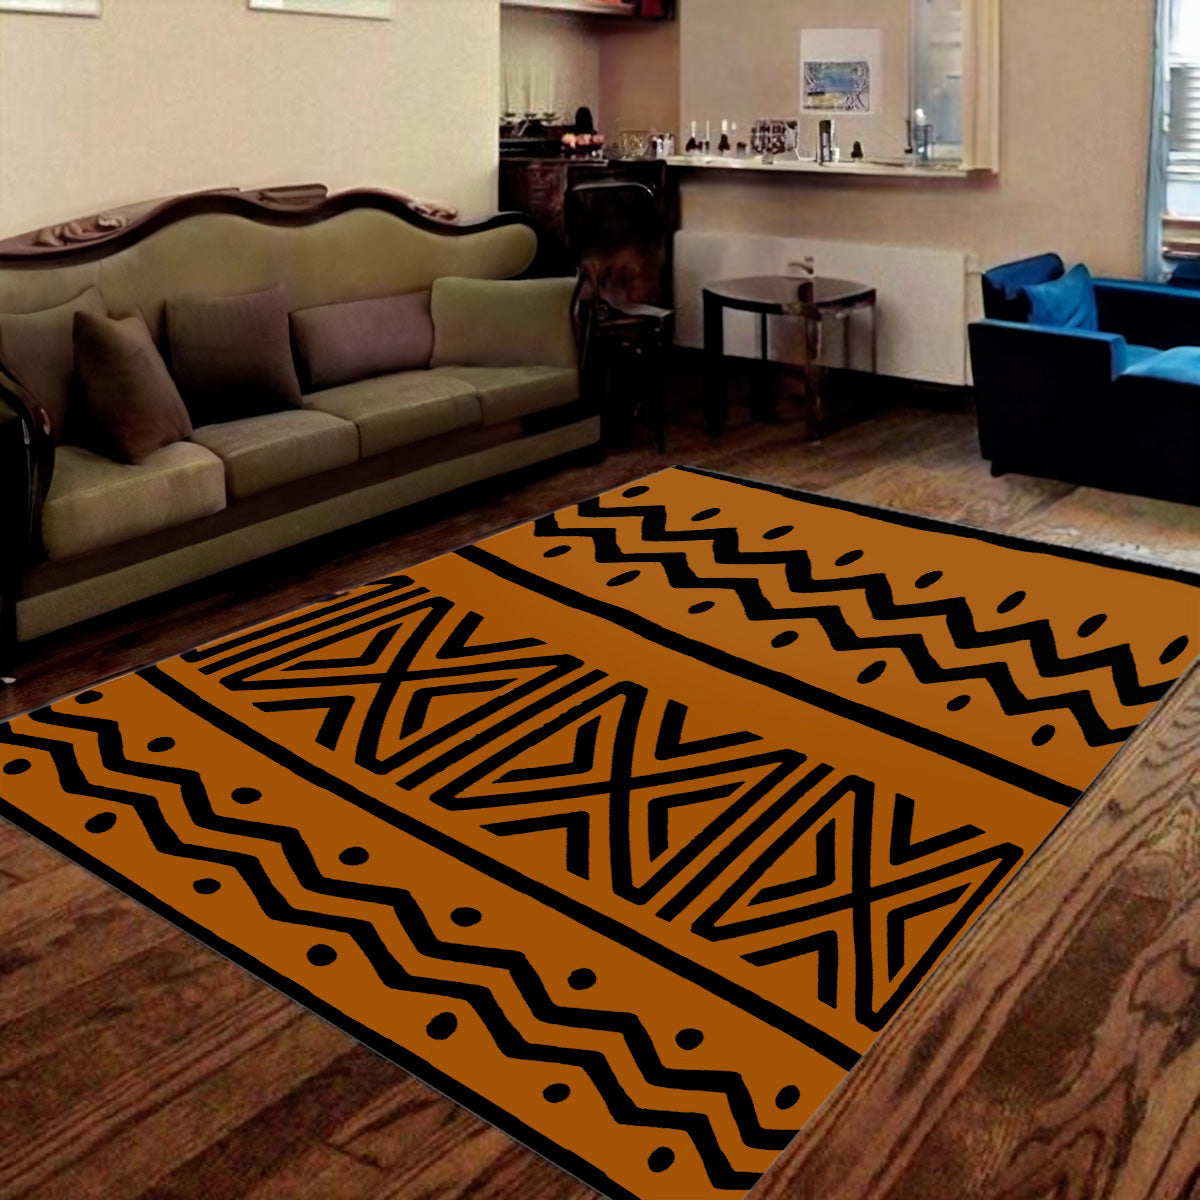 African Carpet - Exquisite Mudcloth Print Rug Design